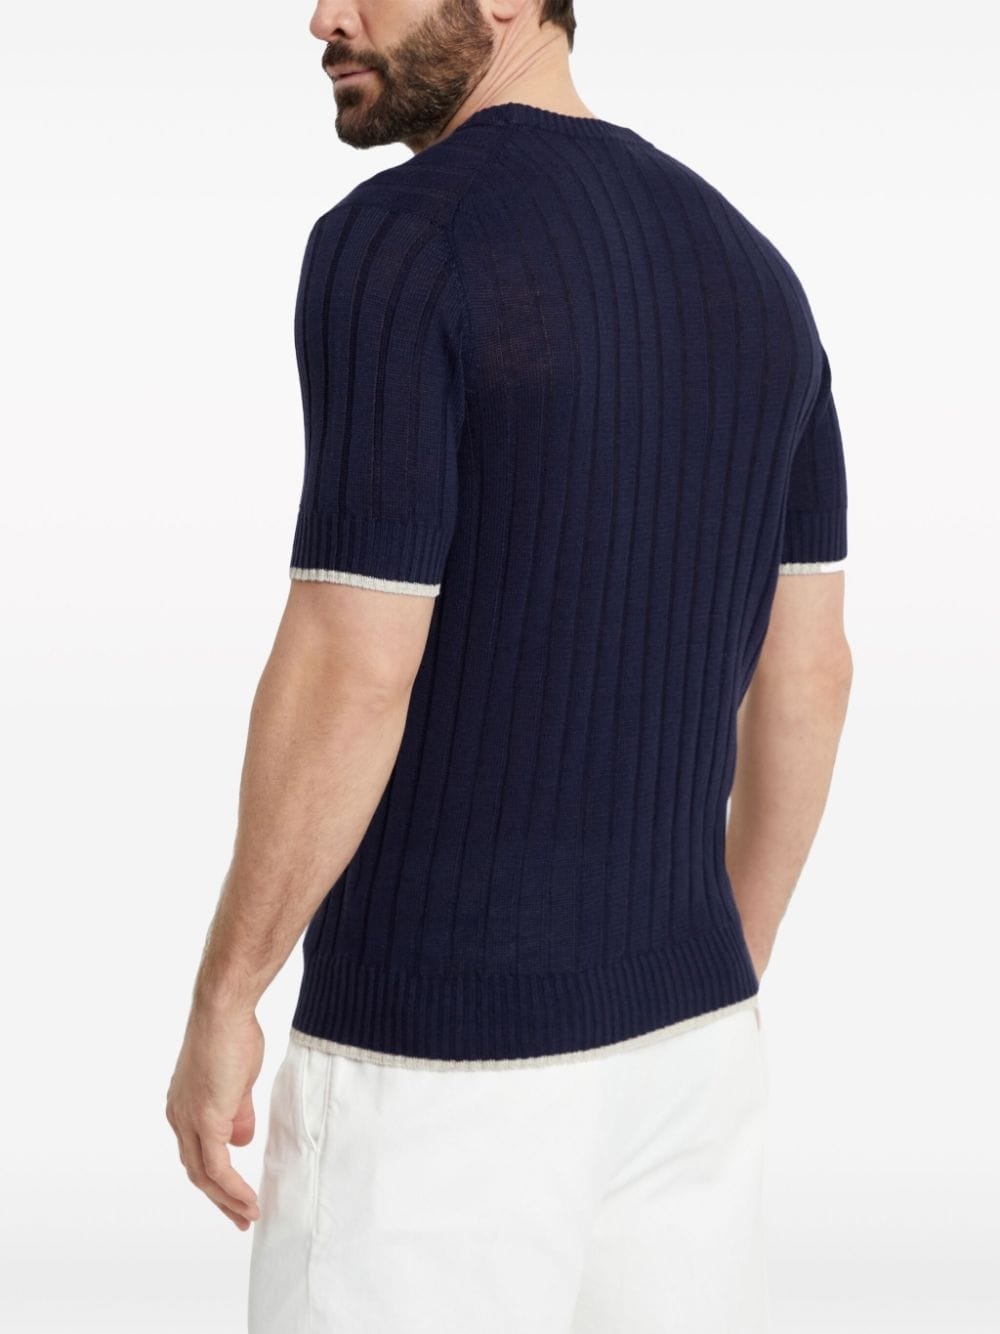 ribbed-knit short-sleeve jumper - 4